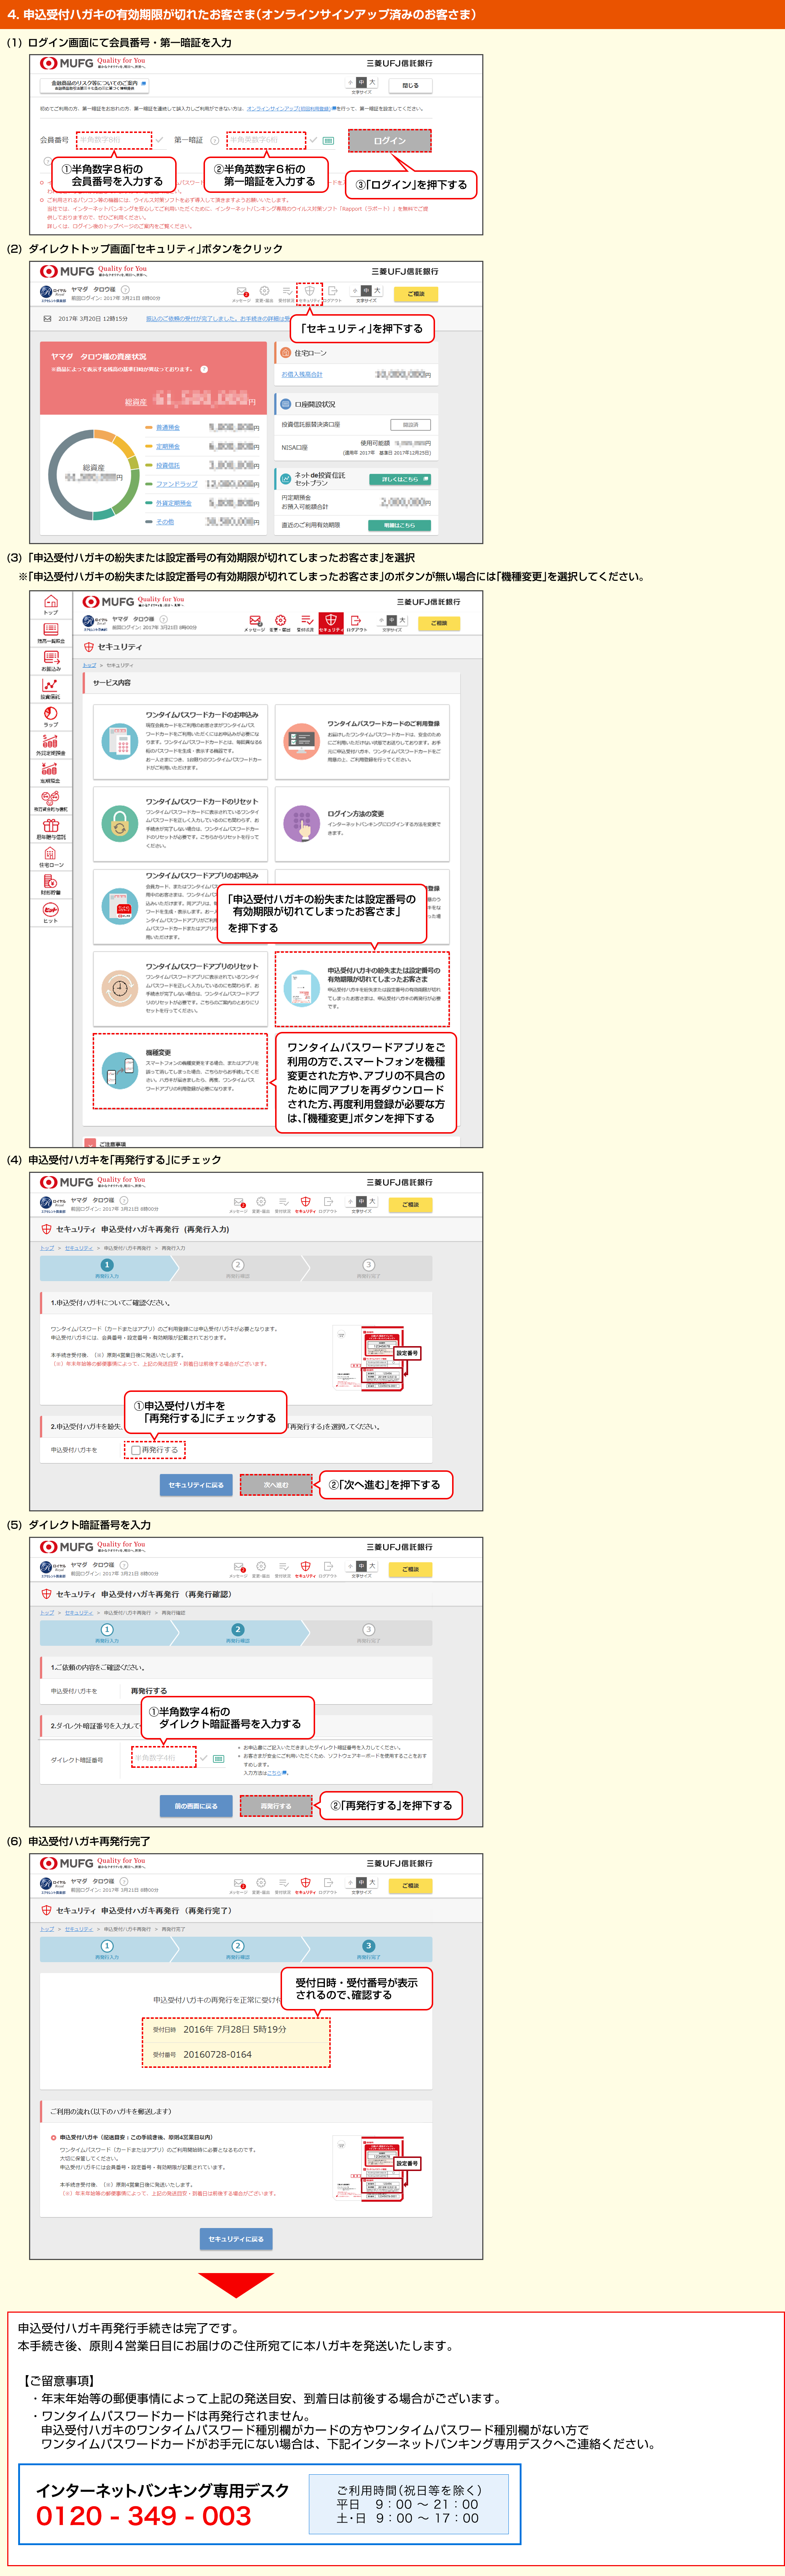 申込受付ハガキの再発行について 三菱ｕｆｊ信託銀行インターネットバンキング